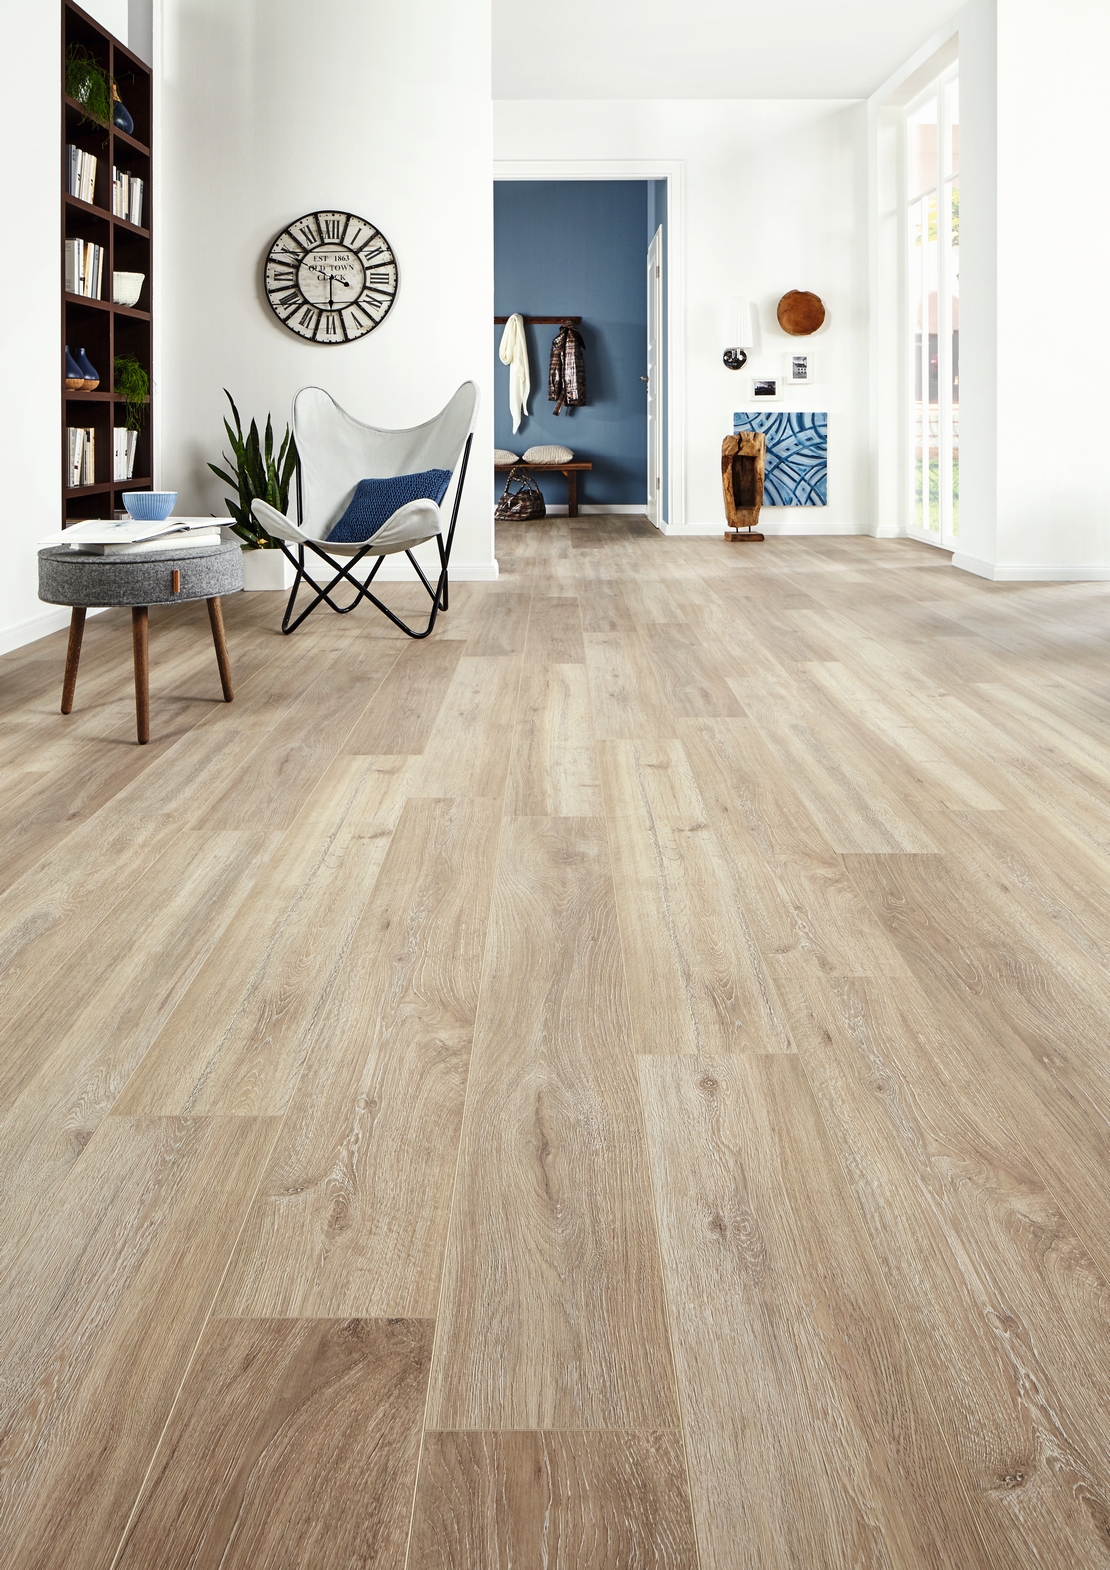 Soggiorno moderno: pavimento laminato effetto legno bianco e  toni blu - Ambienti Iperceramica